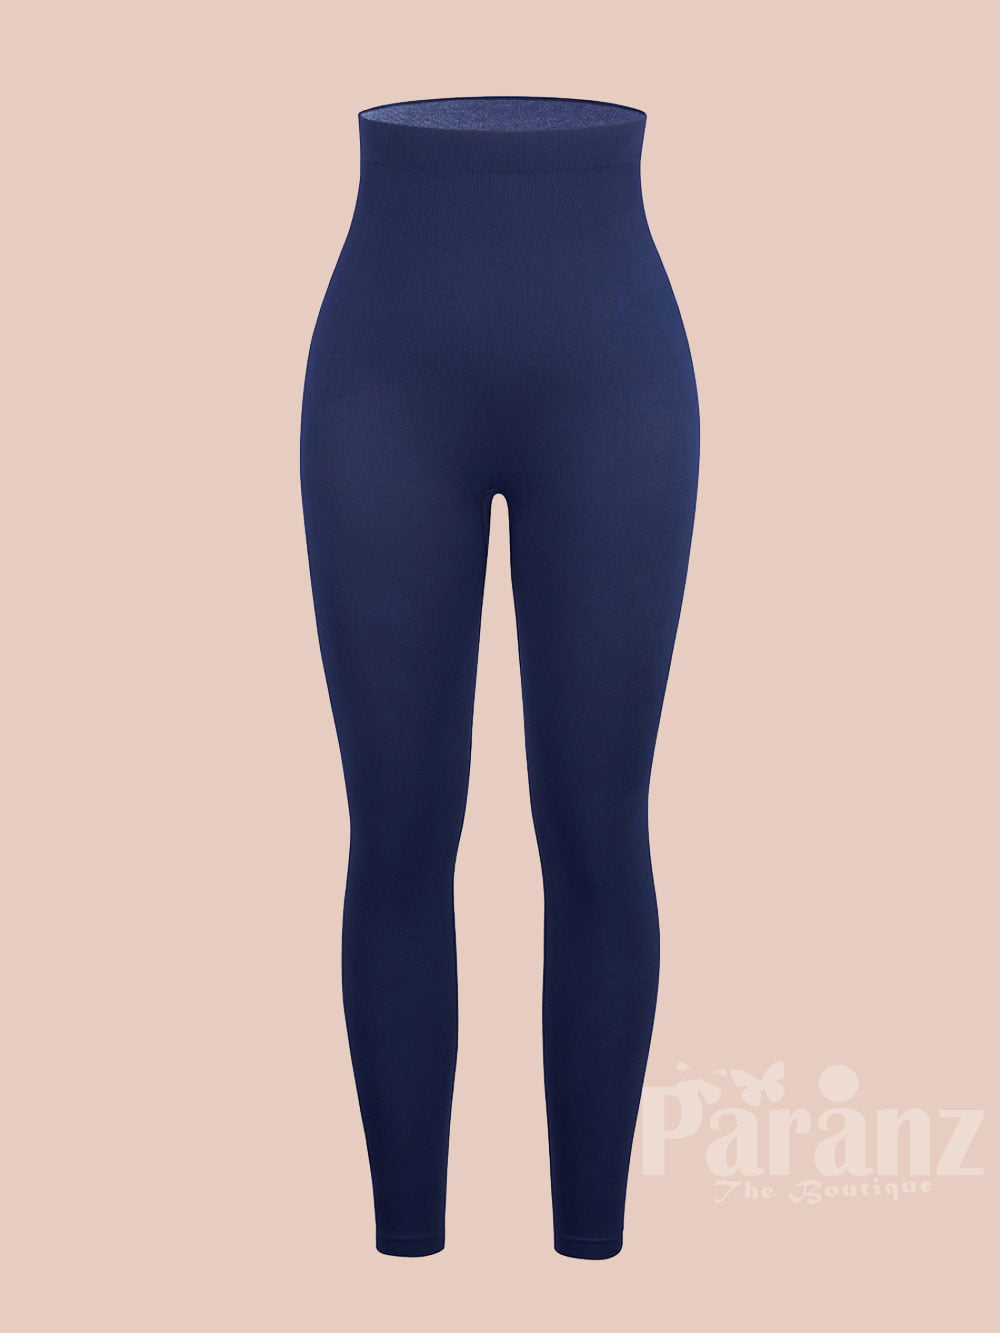 Power 7/8 Gym Leggings - Navy Blue | Women's Leggings | Sweaty Betty